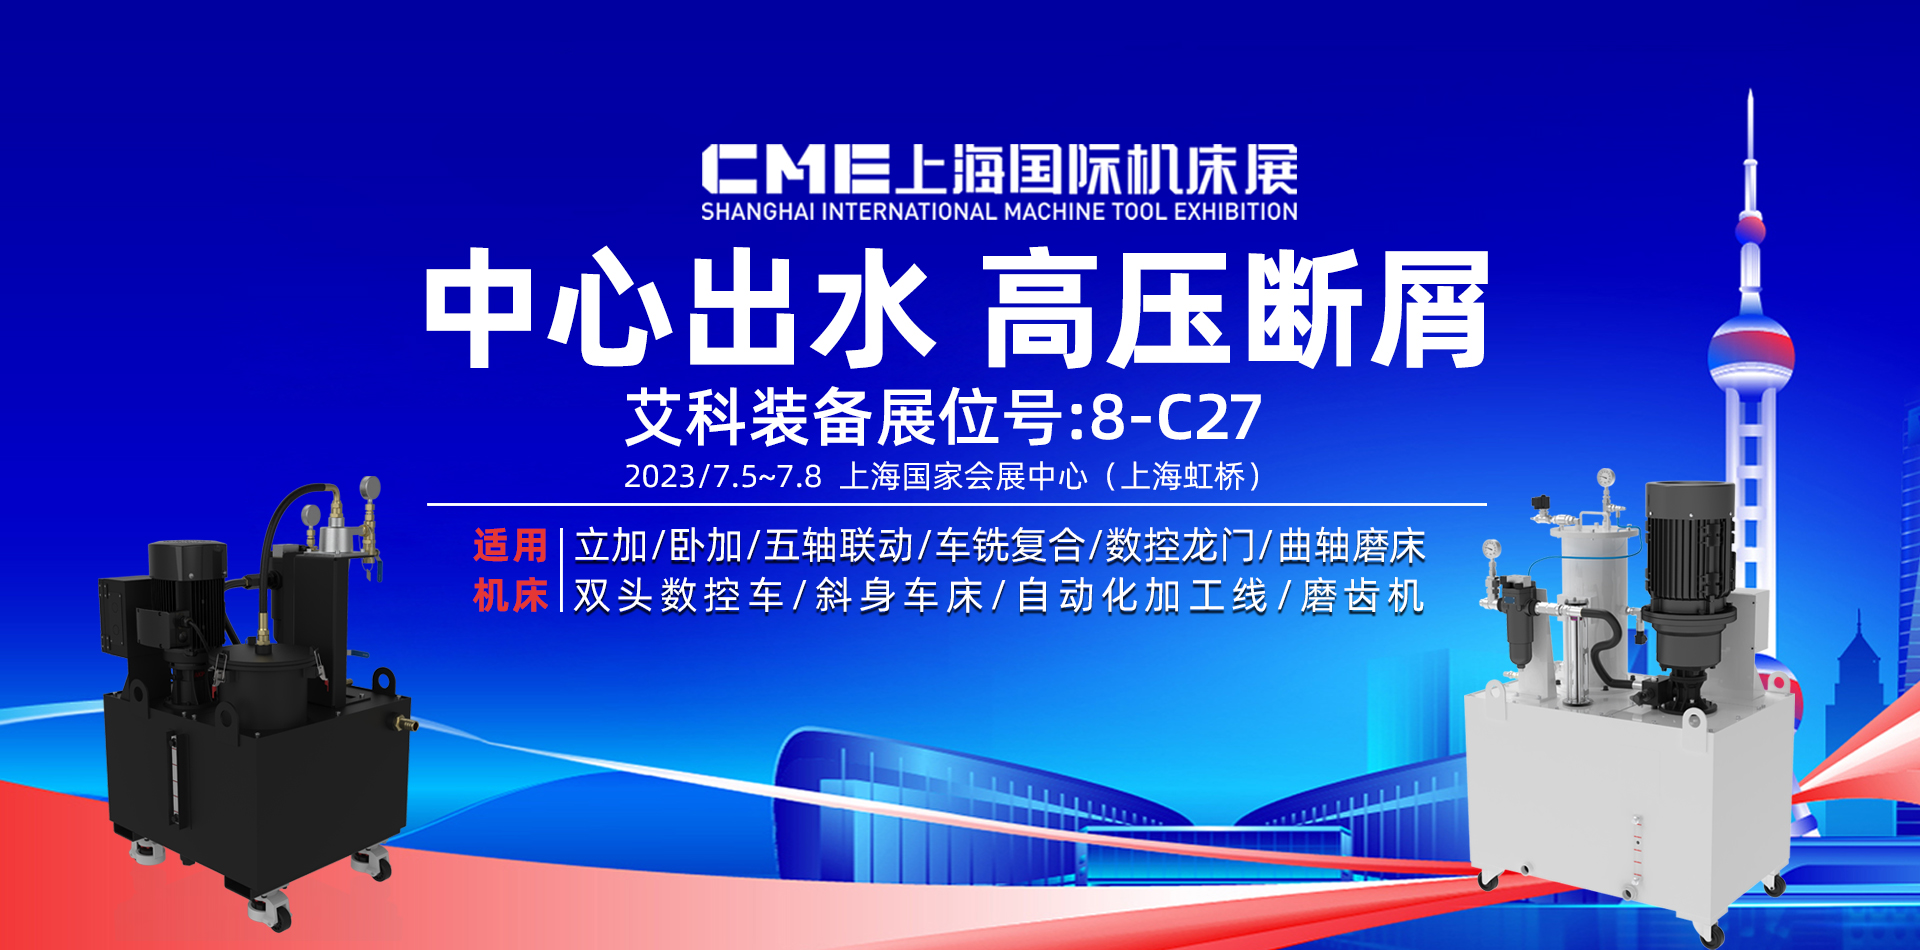 7.5-8日上海CME國際機床展艾科8-C27展位誠邀您光臨